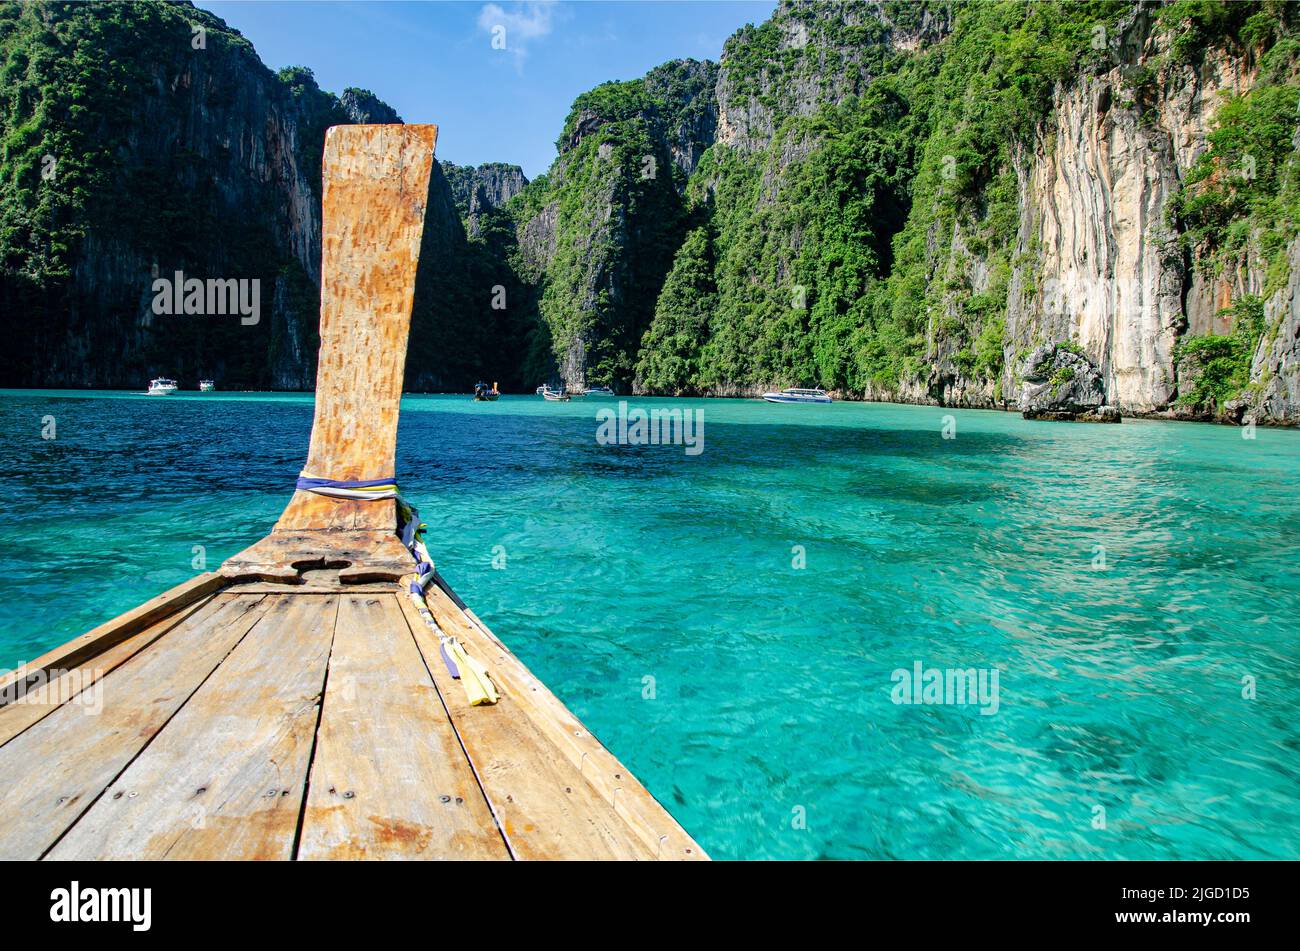 Llegando en bote a la isla de Maya Bay cercano a Phi Phi, Tailandia. Stock Photo